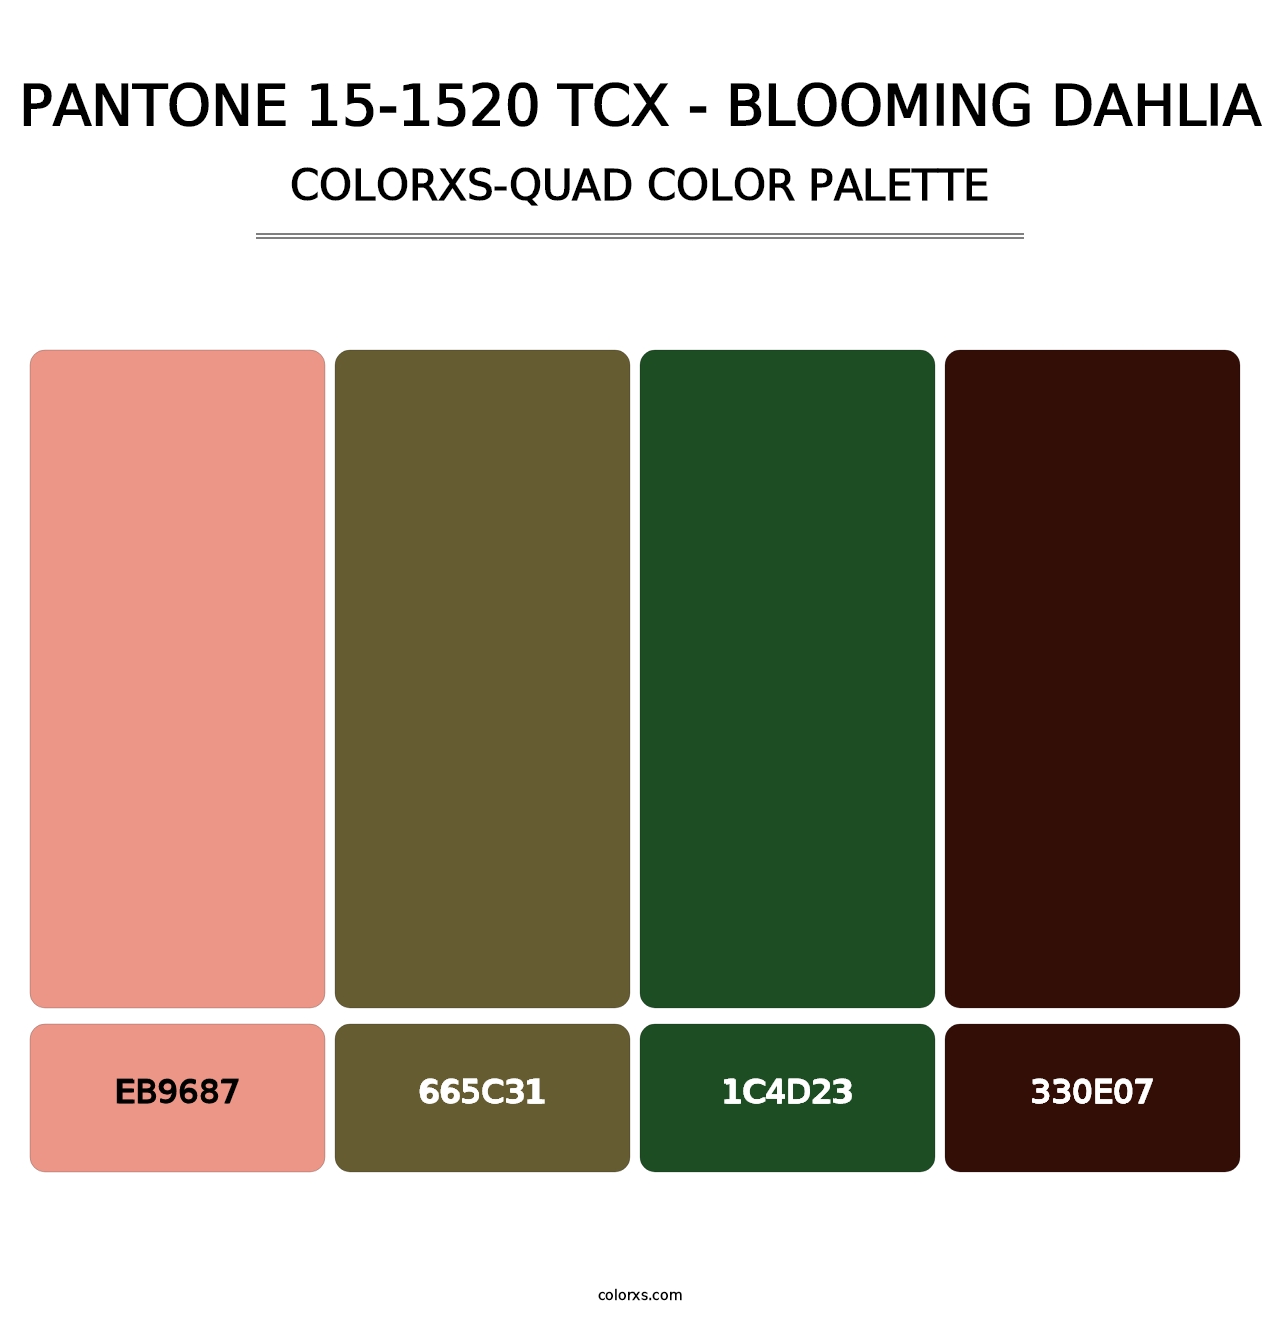 PANTONE 15-1520 TCX - Blooming Dahlia - Colorxs Quad Palette